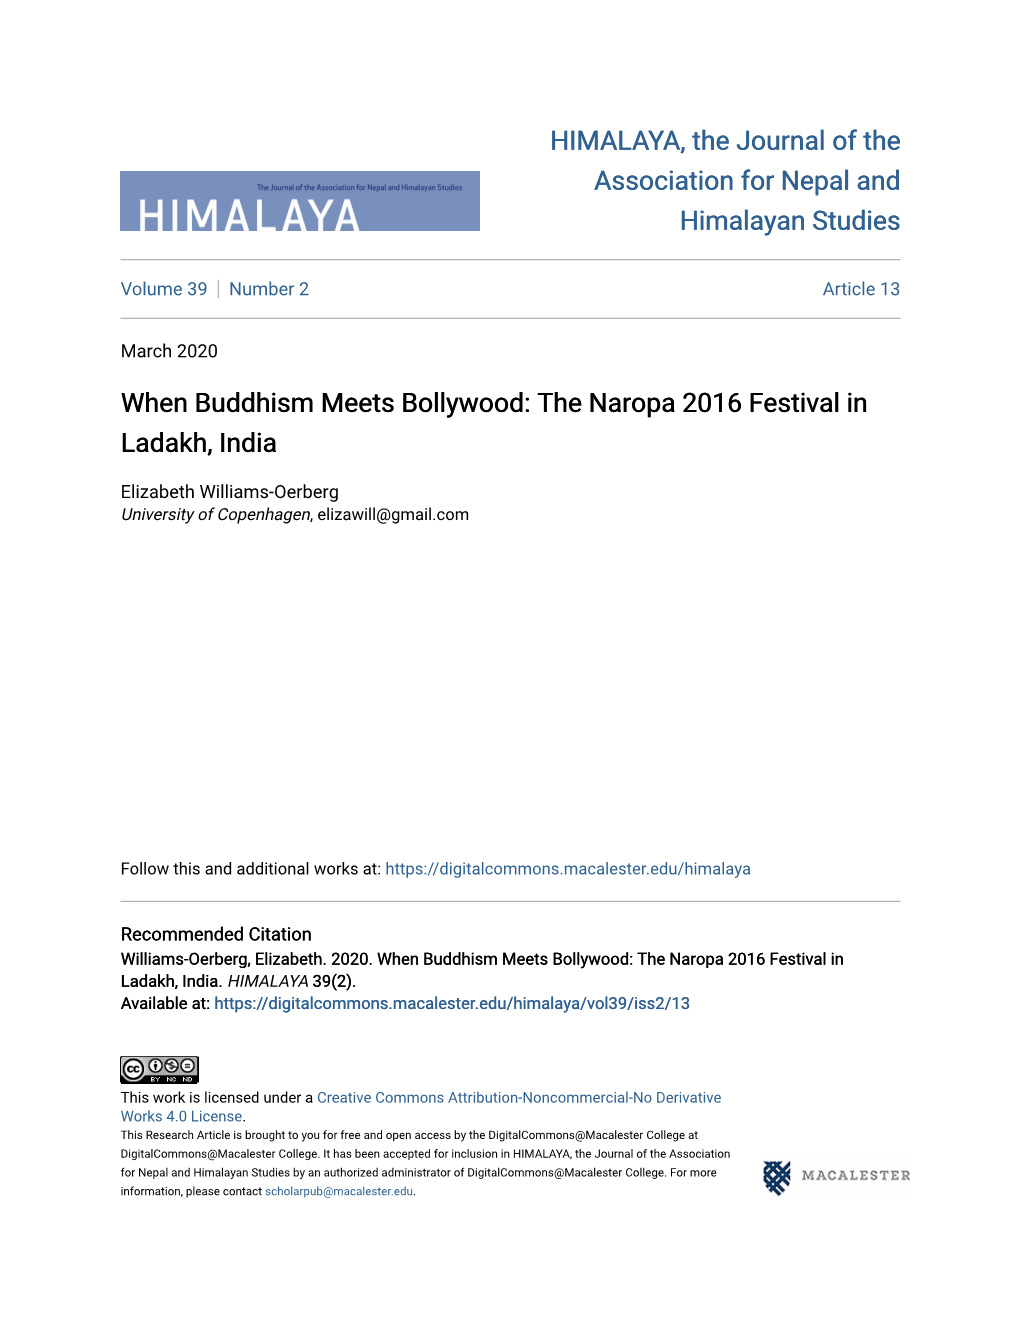 The Naropa 2016 Festival in Ladakh, India